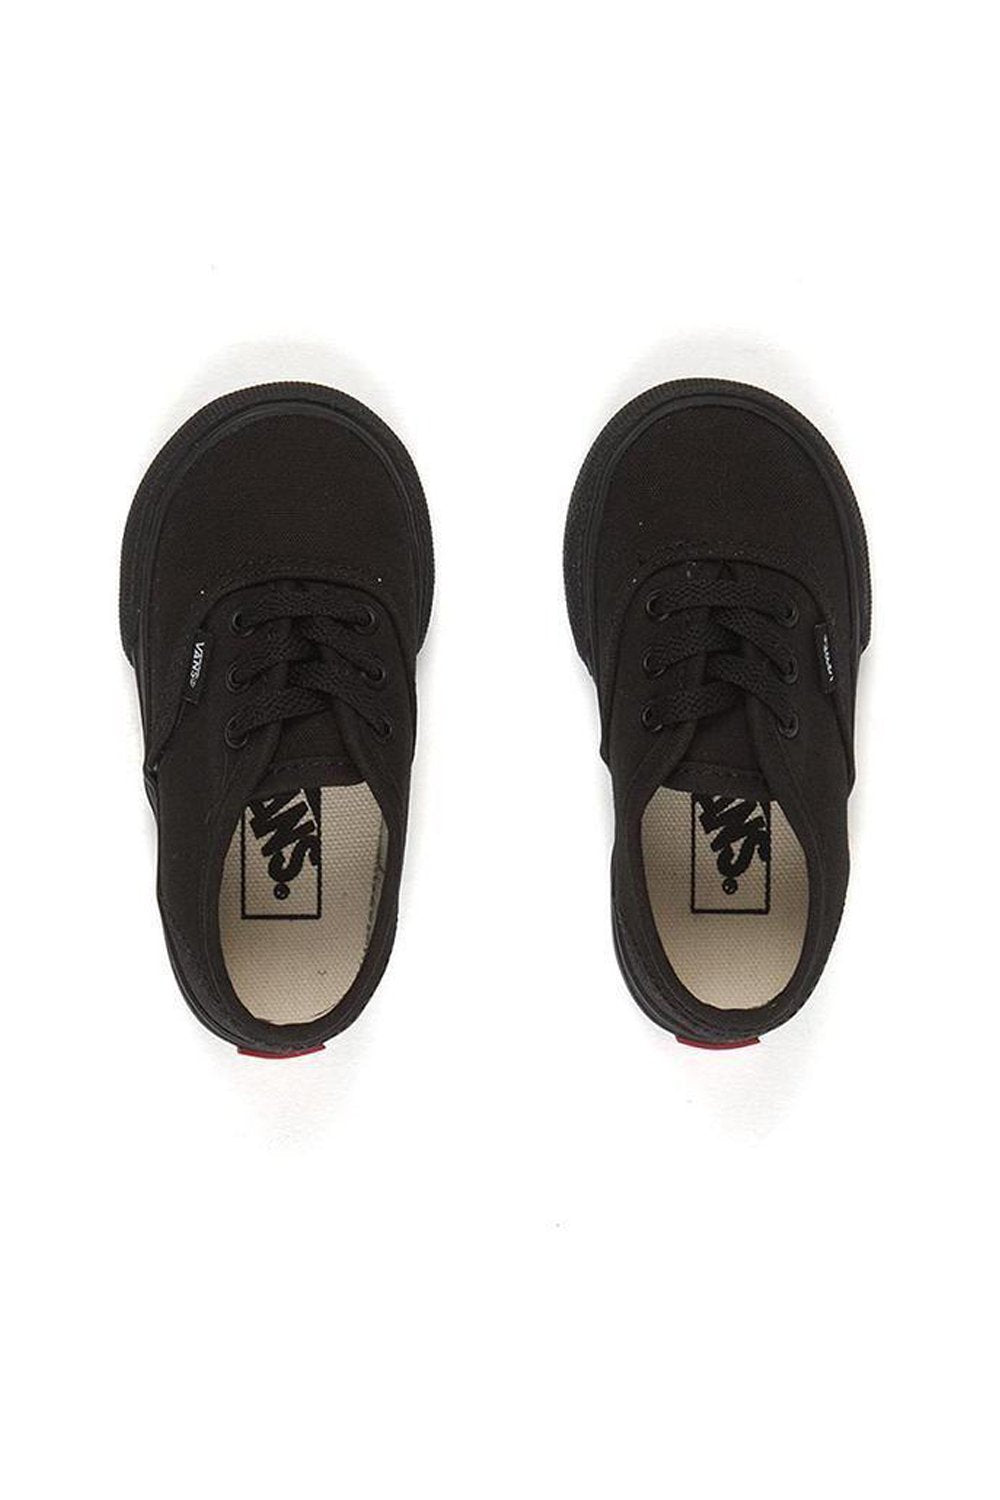 Vans Authentic Toddler Black / Black Shoe